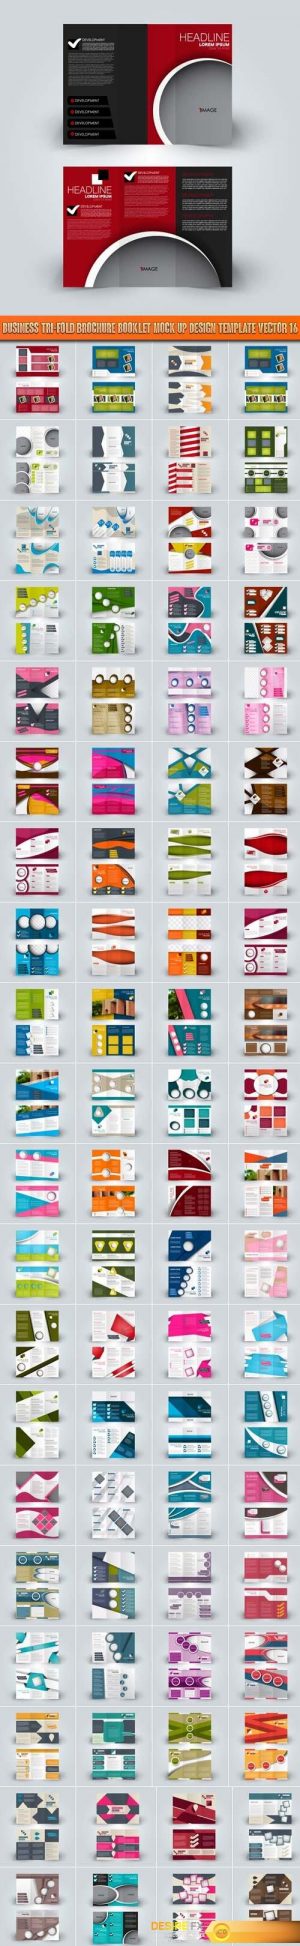 Business tri-fold brochure booklet mock up design template vector 16